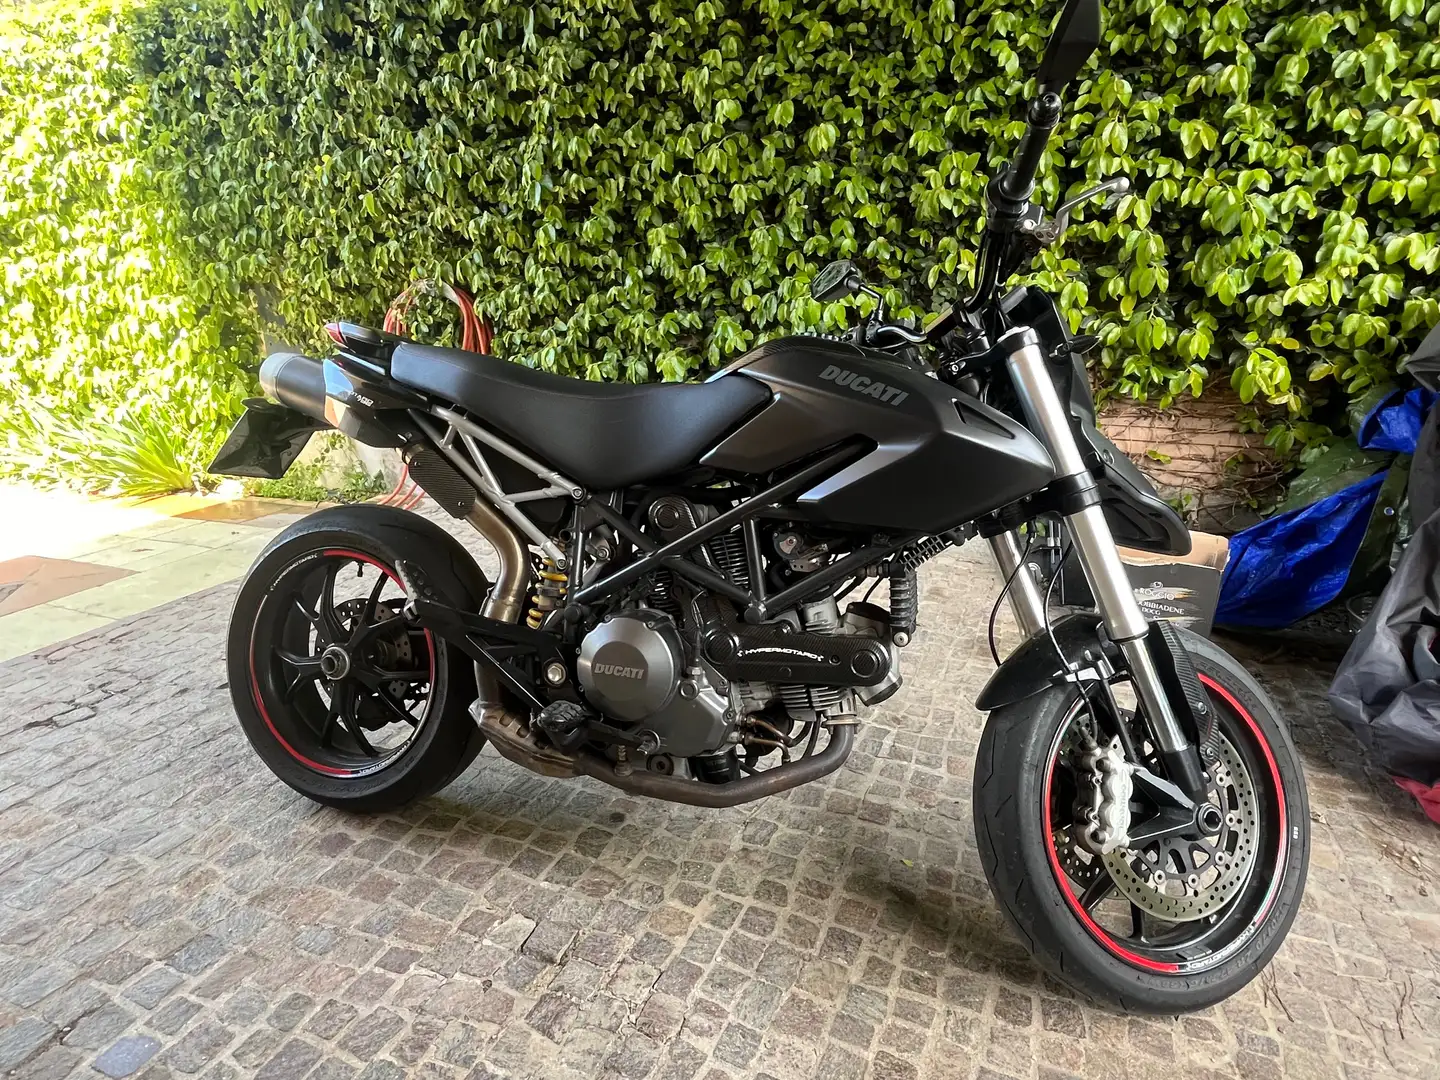 Ducati Hypermotard 796 Schwarz - 2